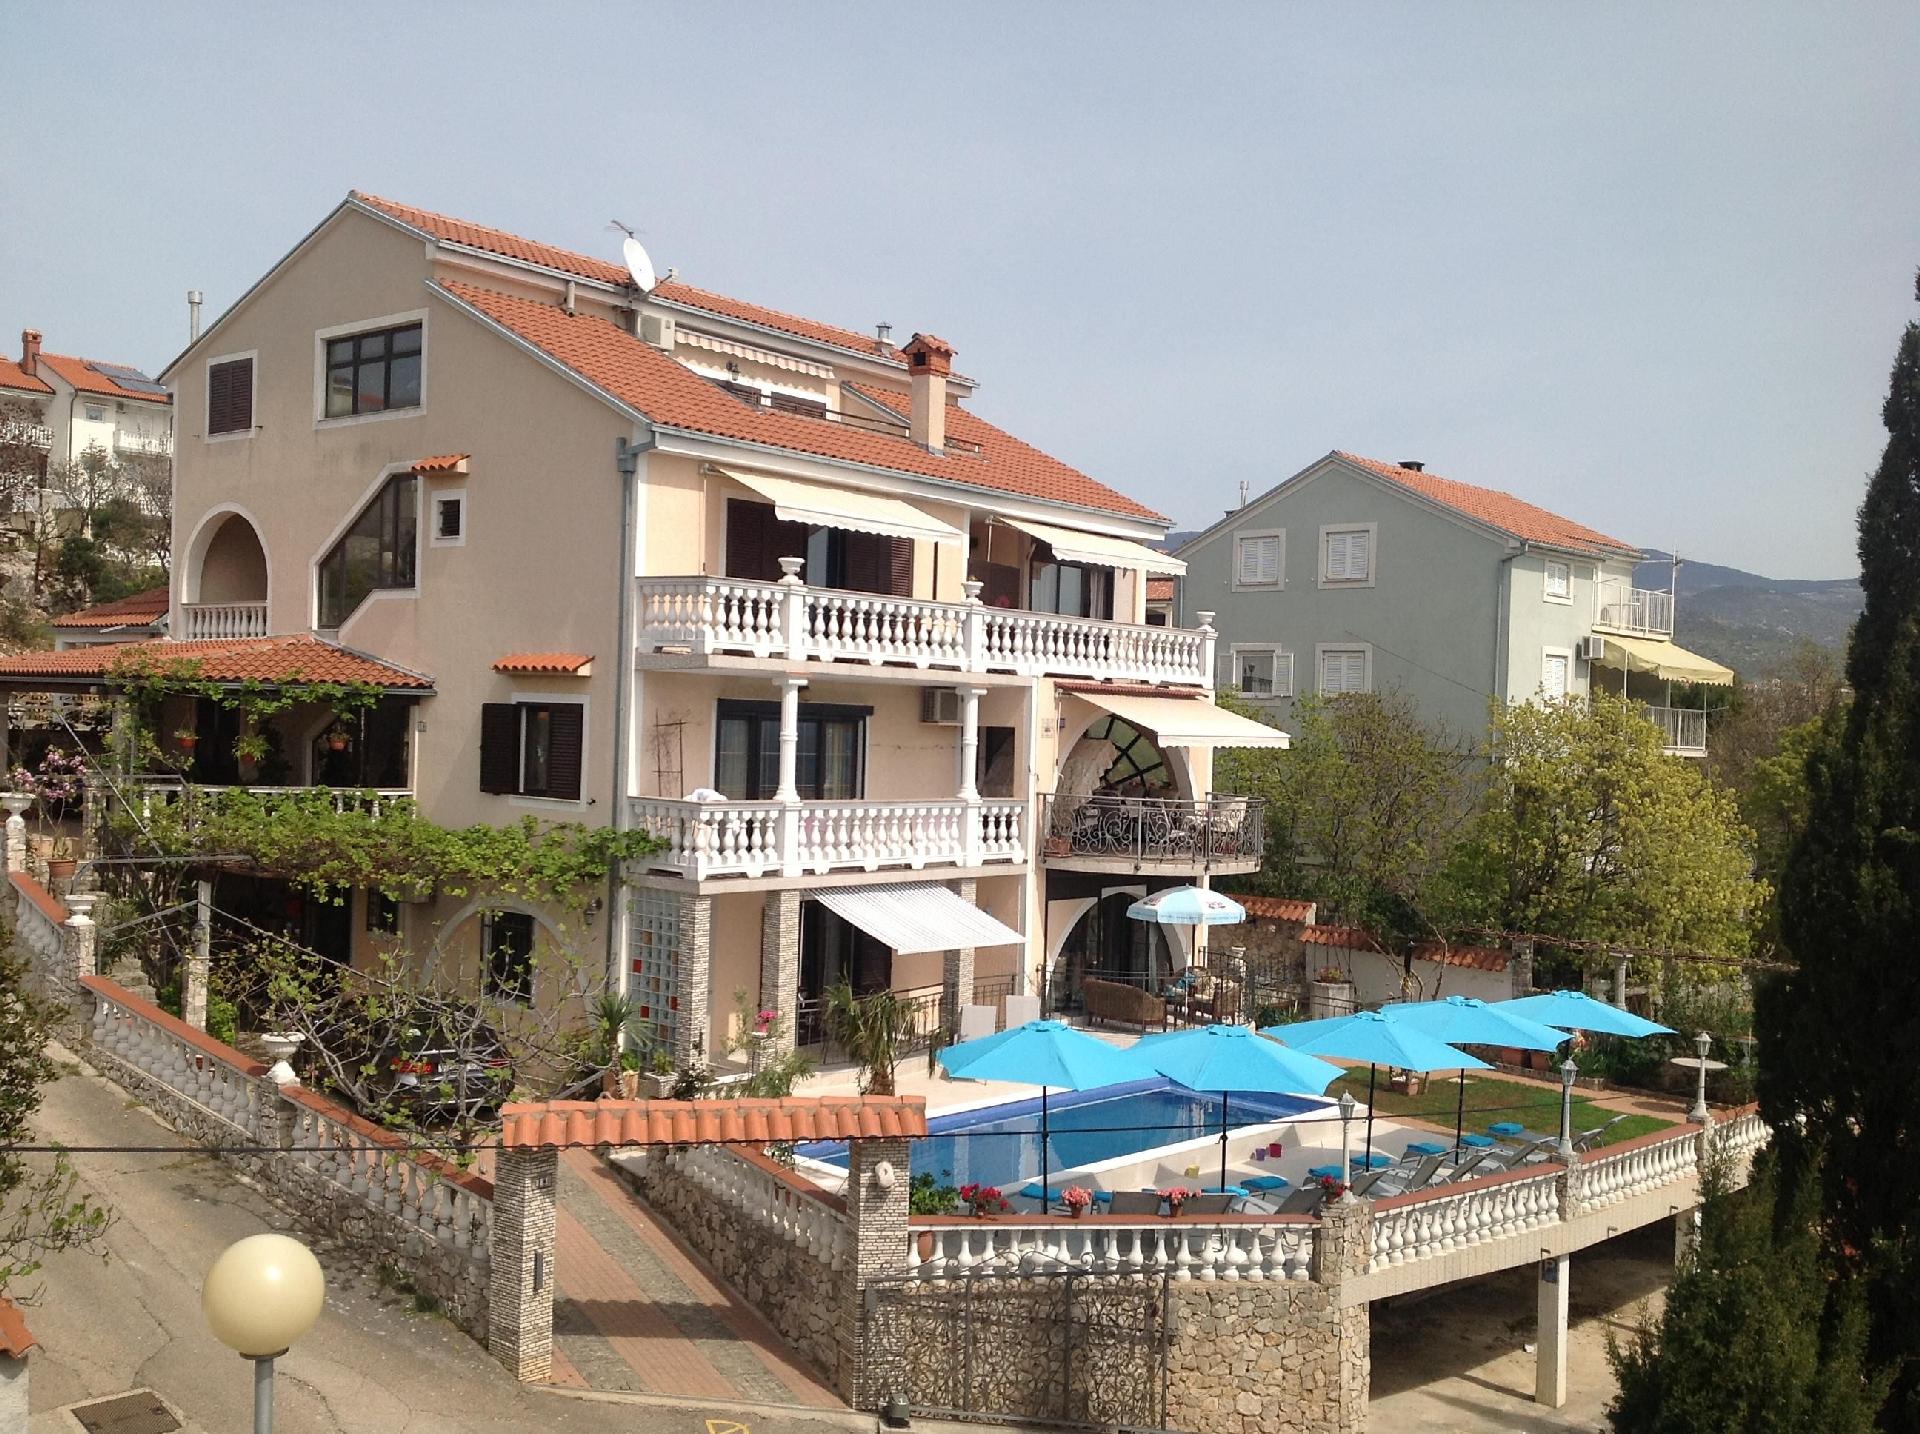 Appartement in Novi Vinodolski mit Garten, Terrass Ferienhaus in Kroatien